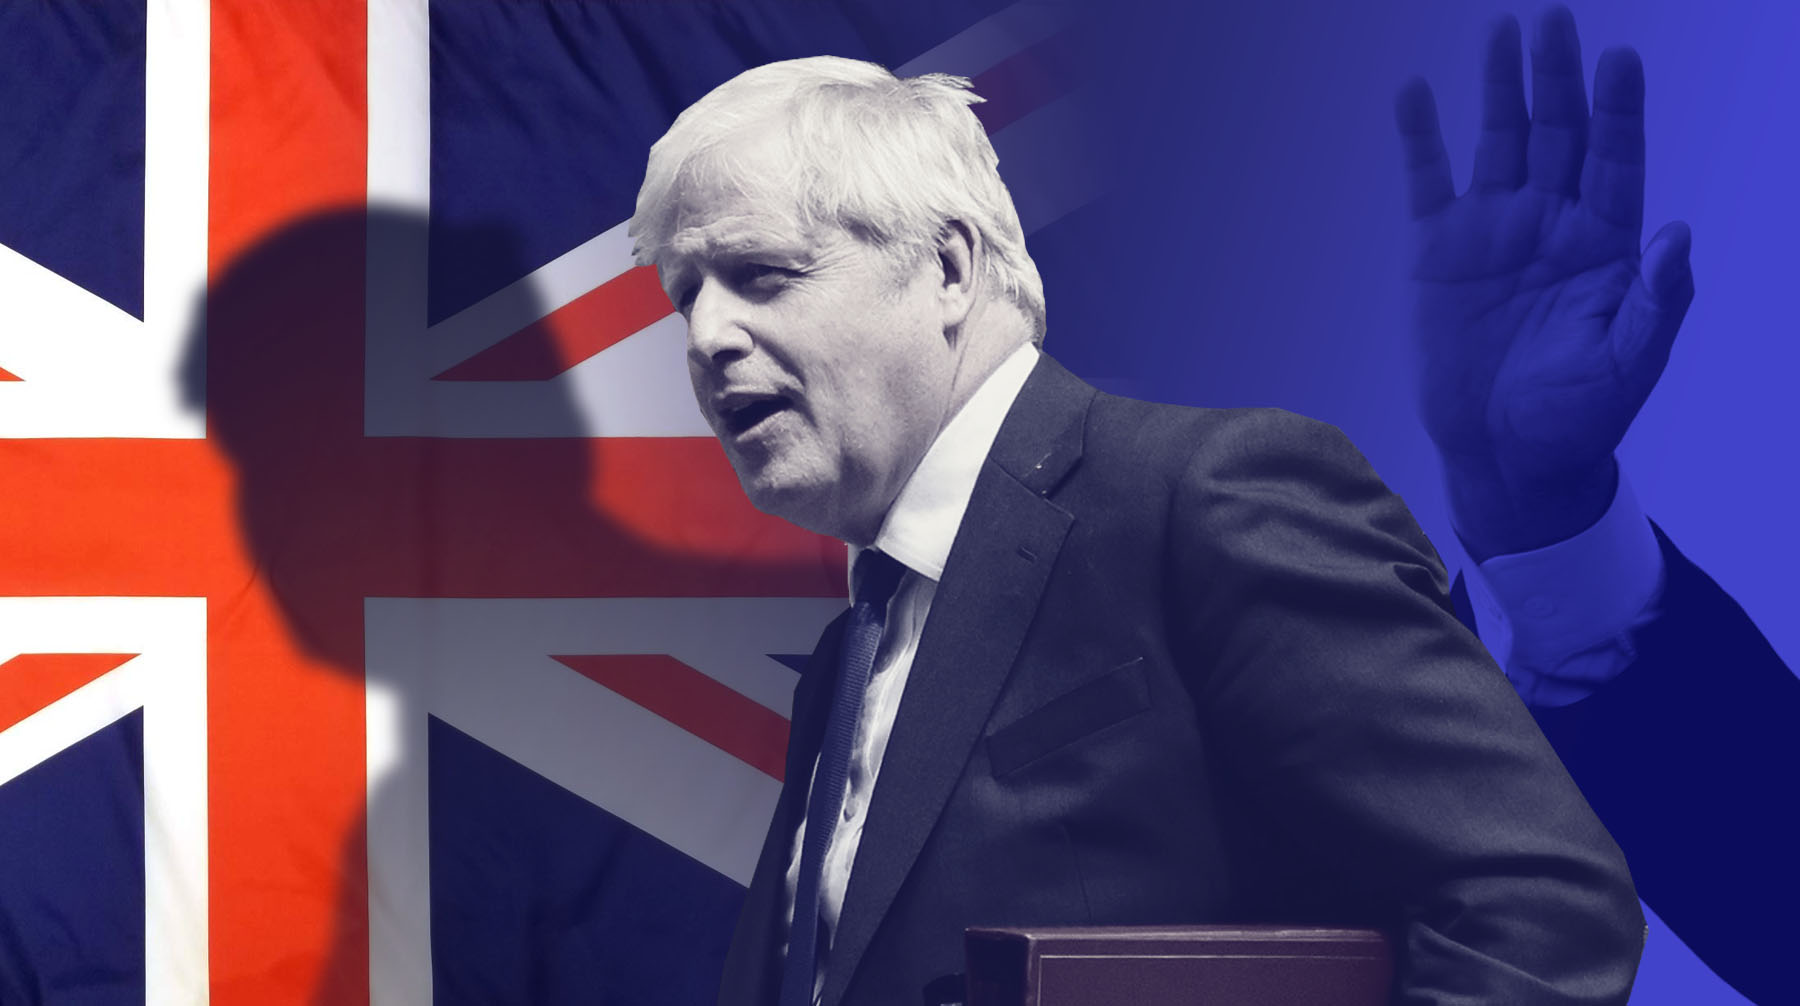 Уход Джонсона — шанс восстановления переговоров с Россией. Политологи оценили кризис из-за отставки премьера Великобритании